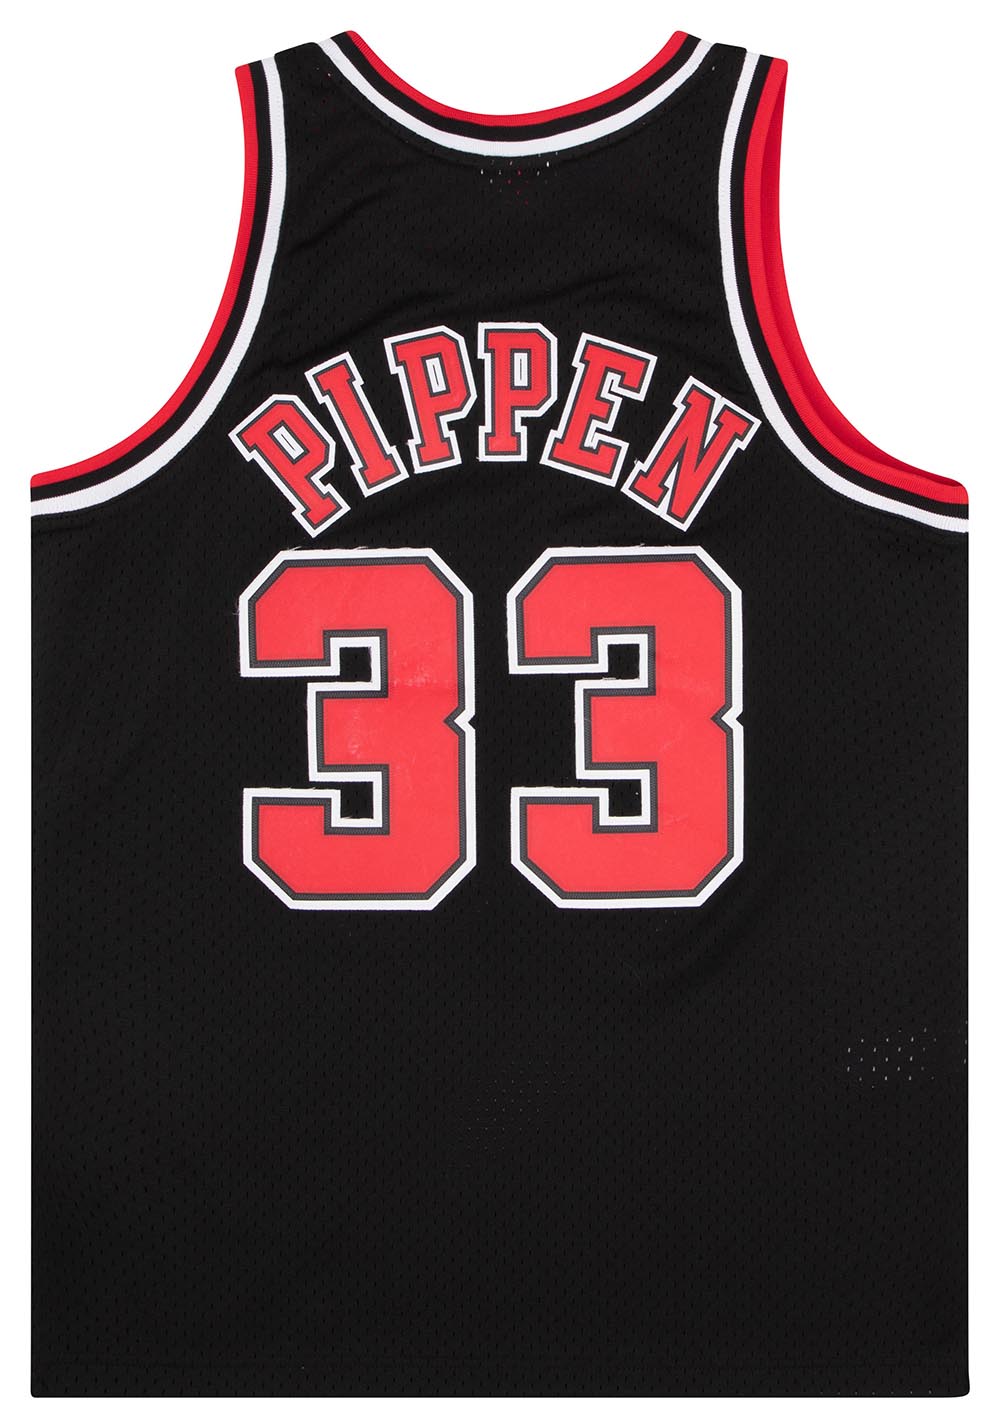 Mitchell Ness NBA Authentic Alt Jersey Bulls Green Derrick Rose #1 Size XL